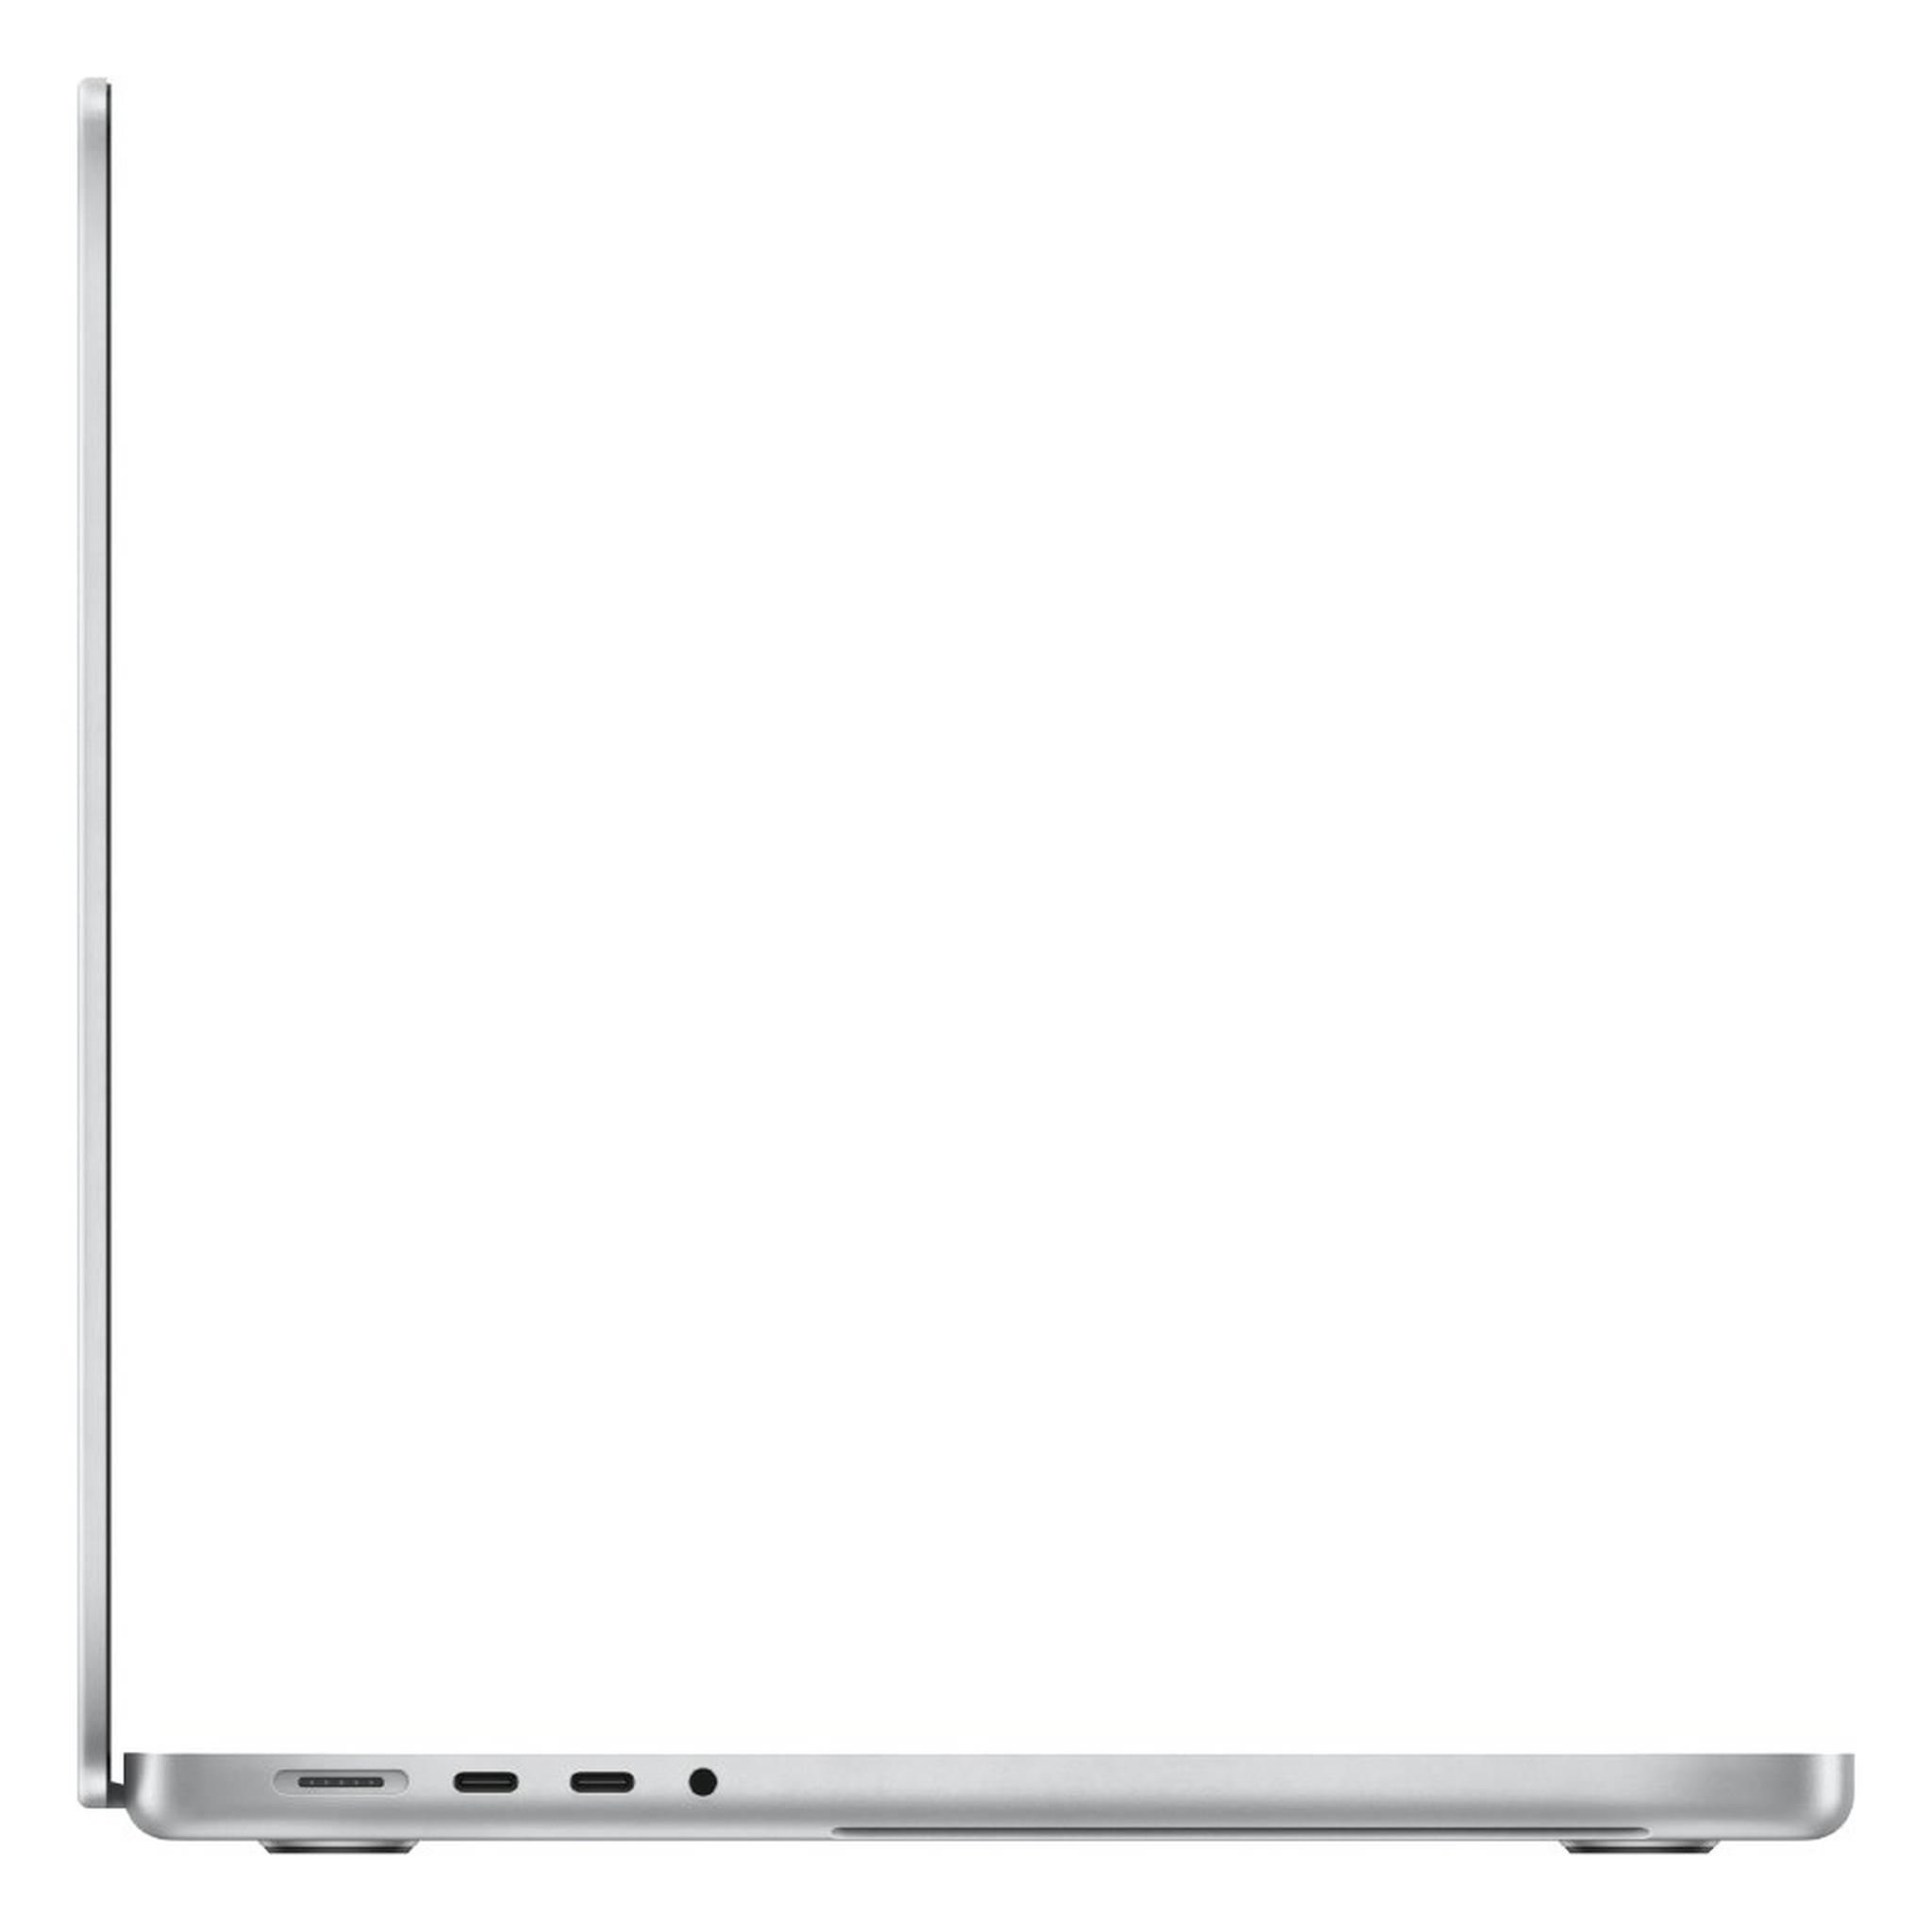 Apple MacBook Pro M1 Pro (2021), 16GB RAM, 512GB SSD, 14-inch Laptop - Silver